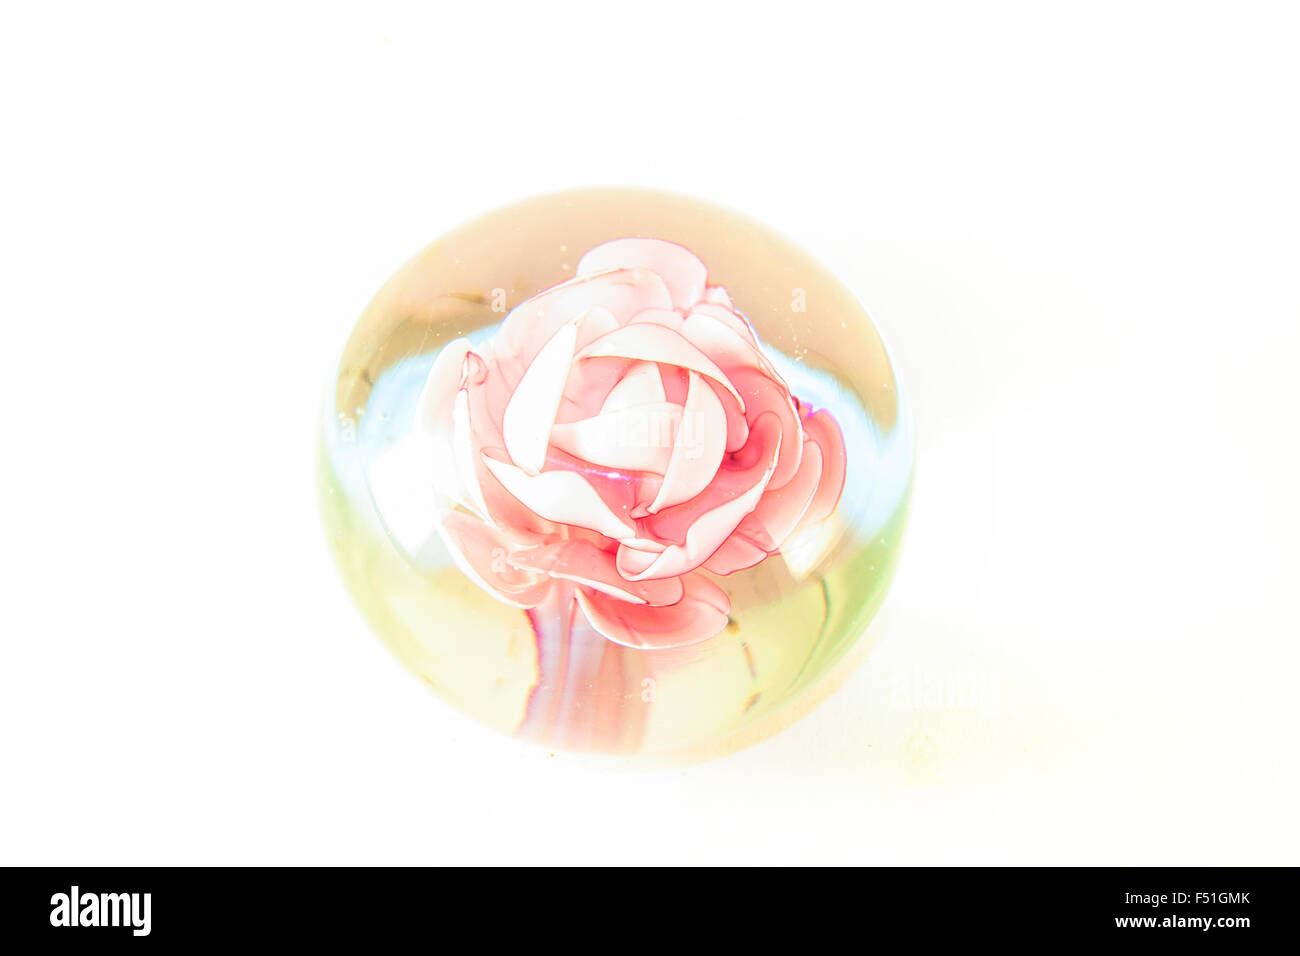 Une rose en verre, isolé sur fond blanc Banque D'Images